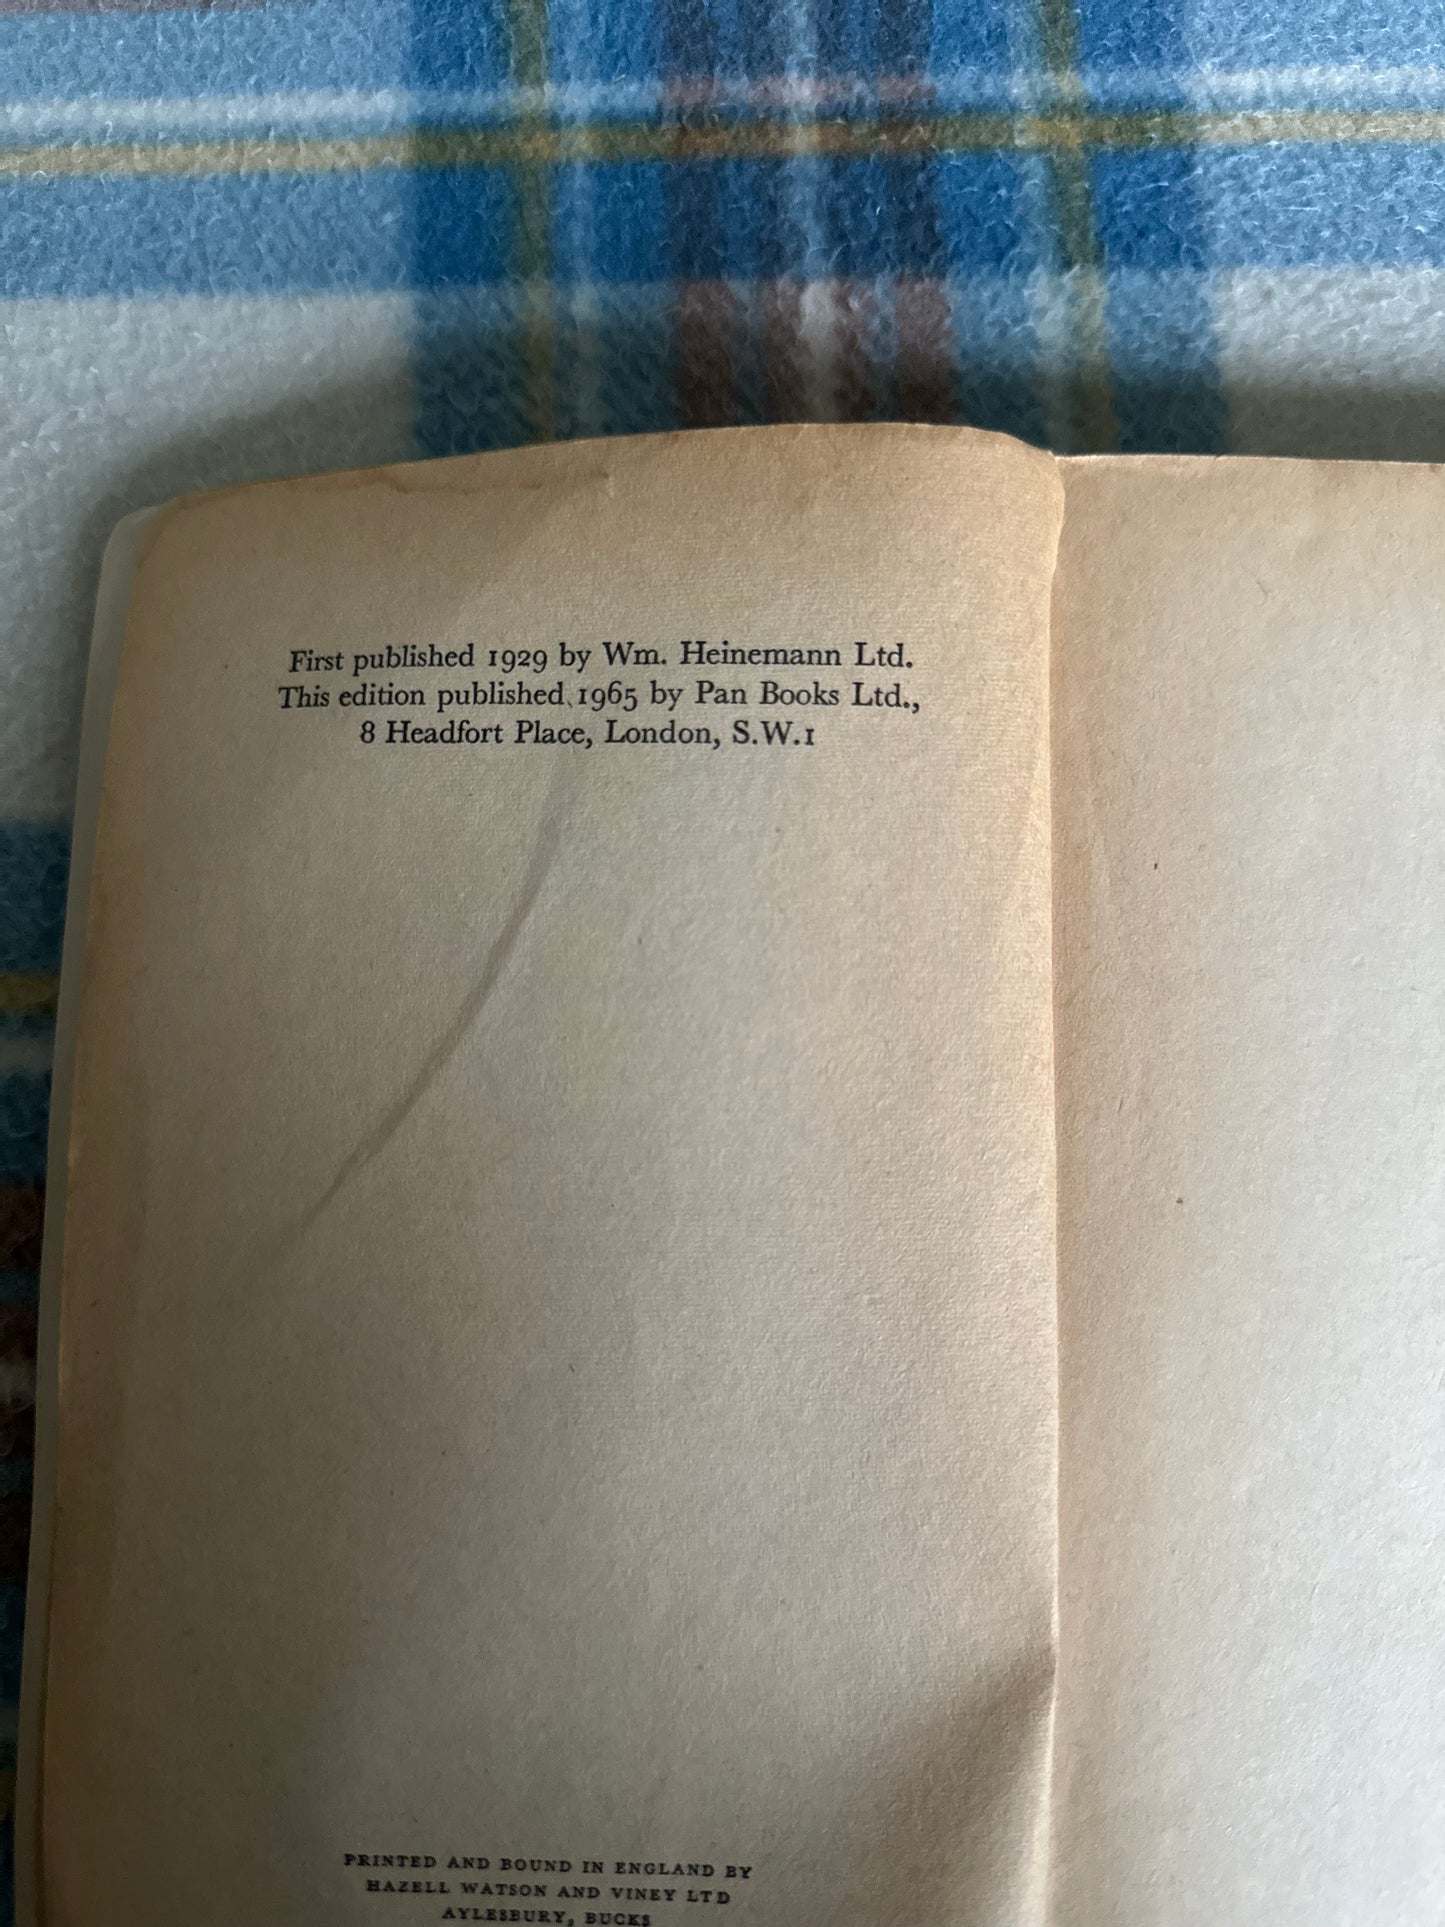 1965 The Black Moth - Georgette Heyer(Pan Books)